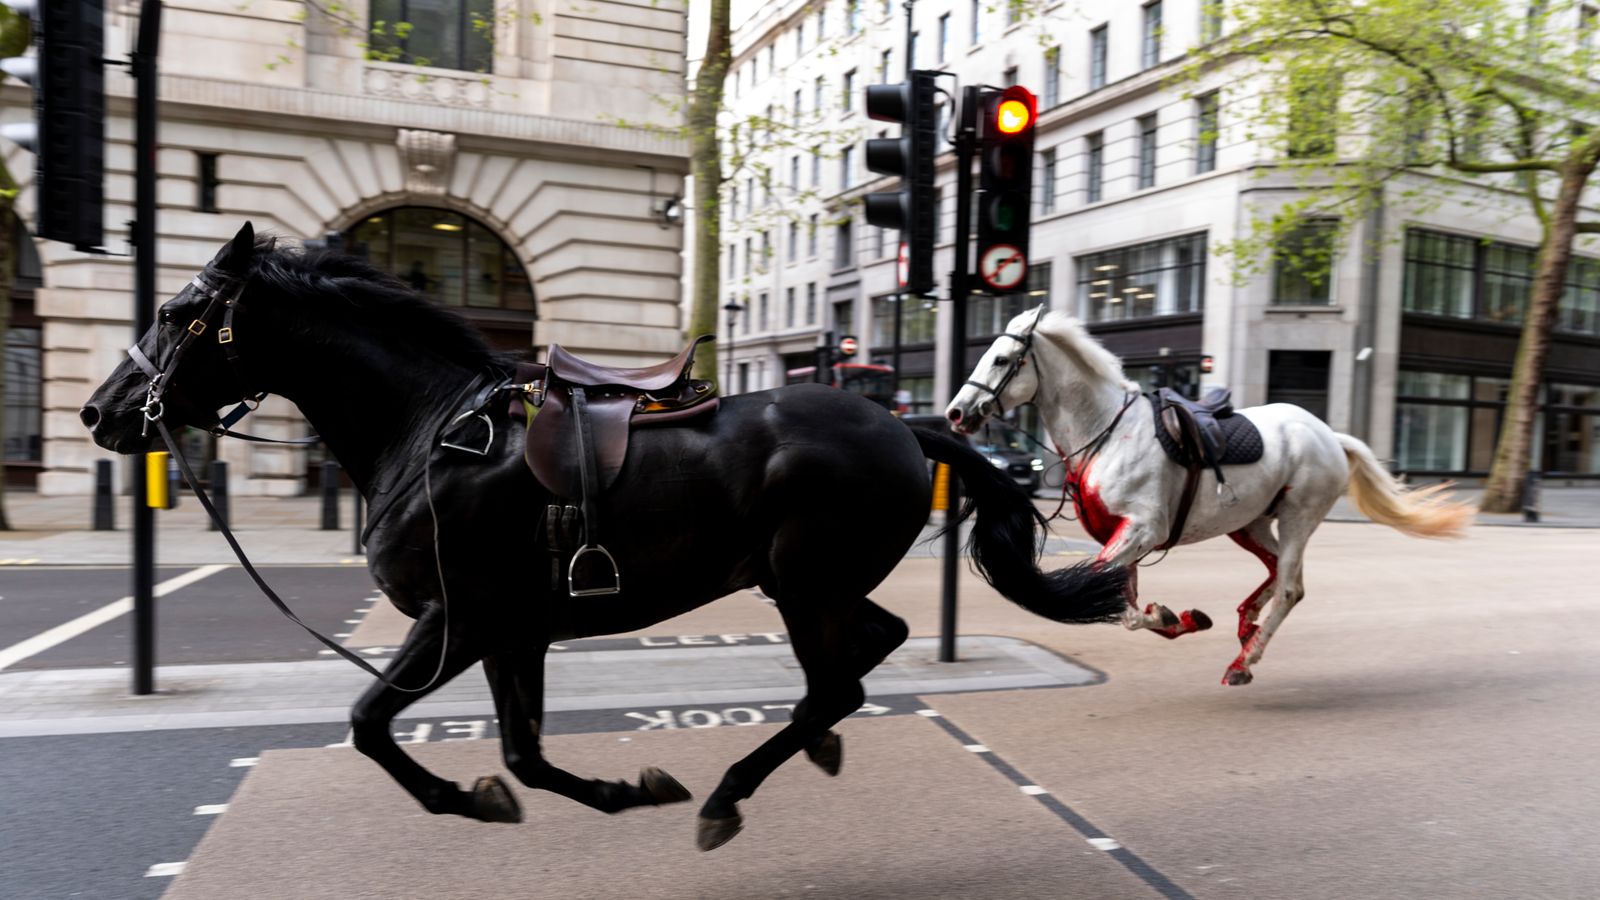 اثنان من الخيول حين تمردا واثارا الفوضى في العاصمة البريطانية في أبريل 